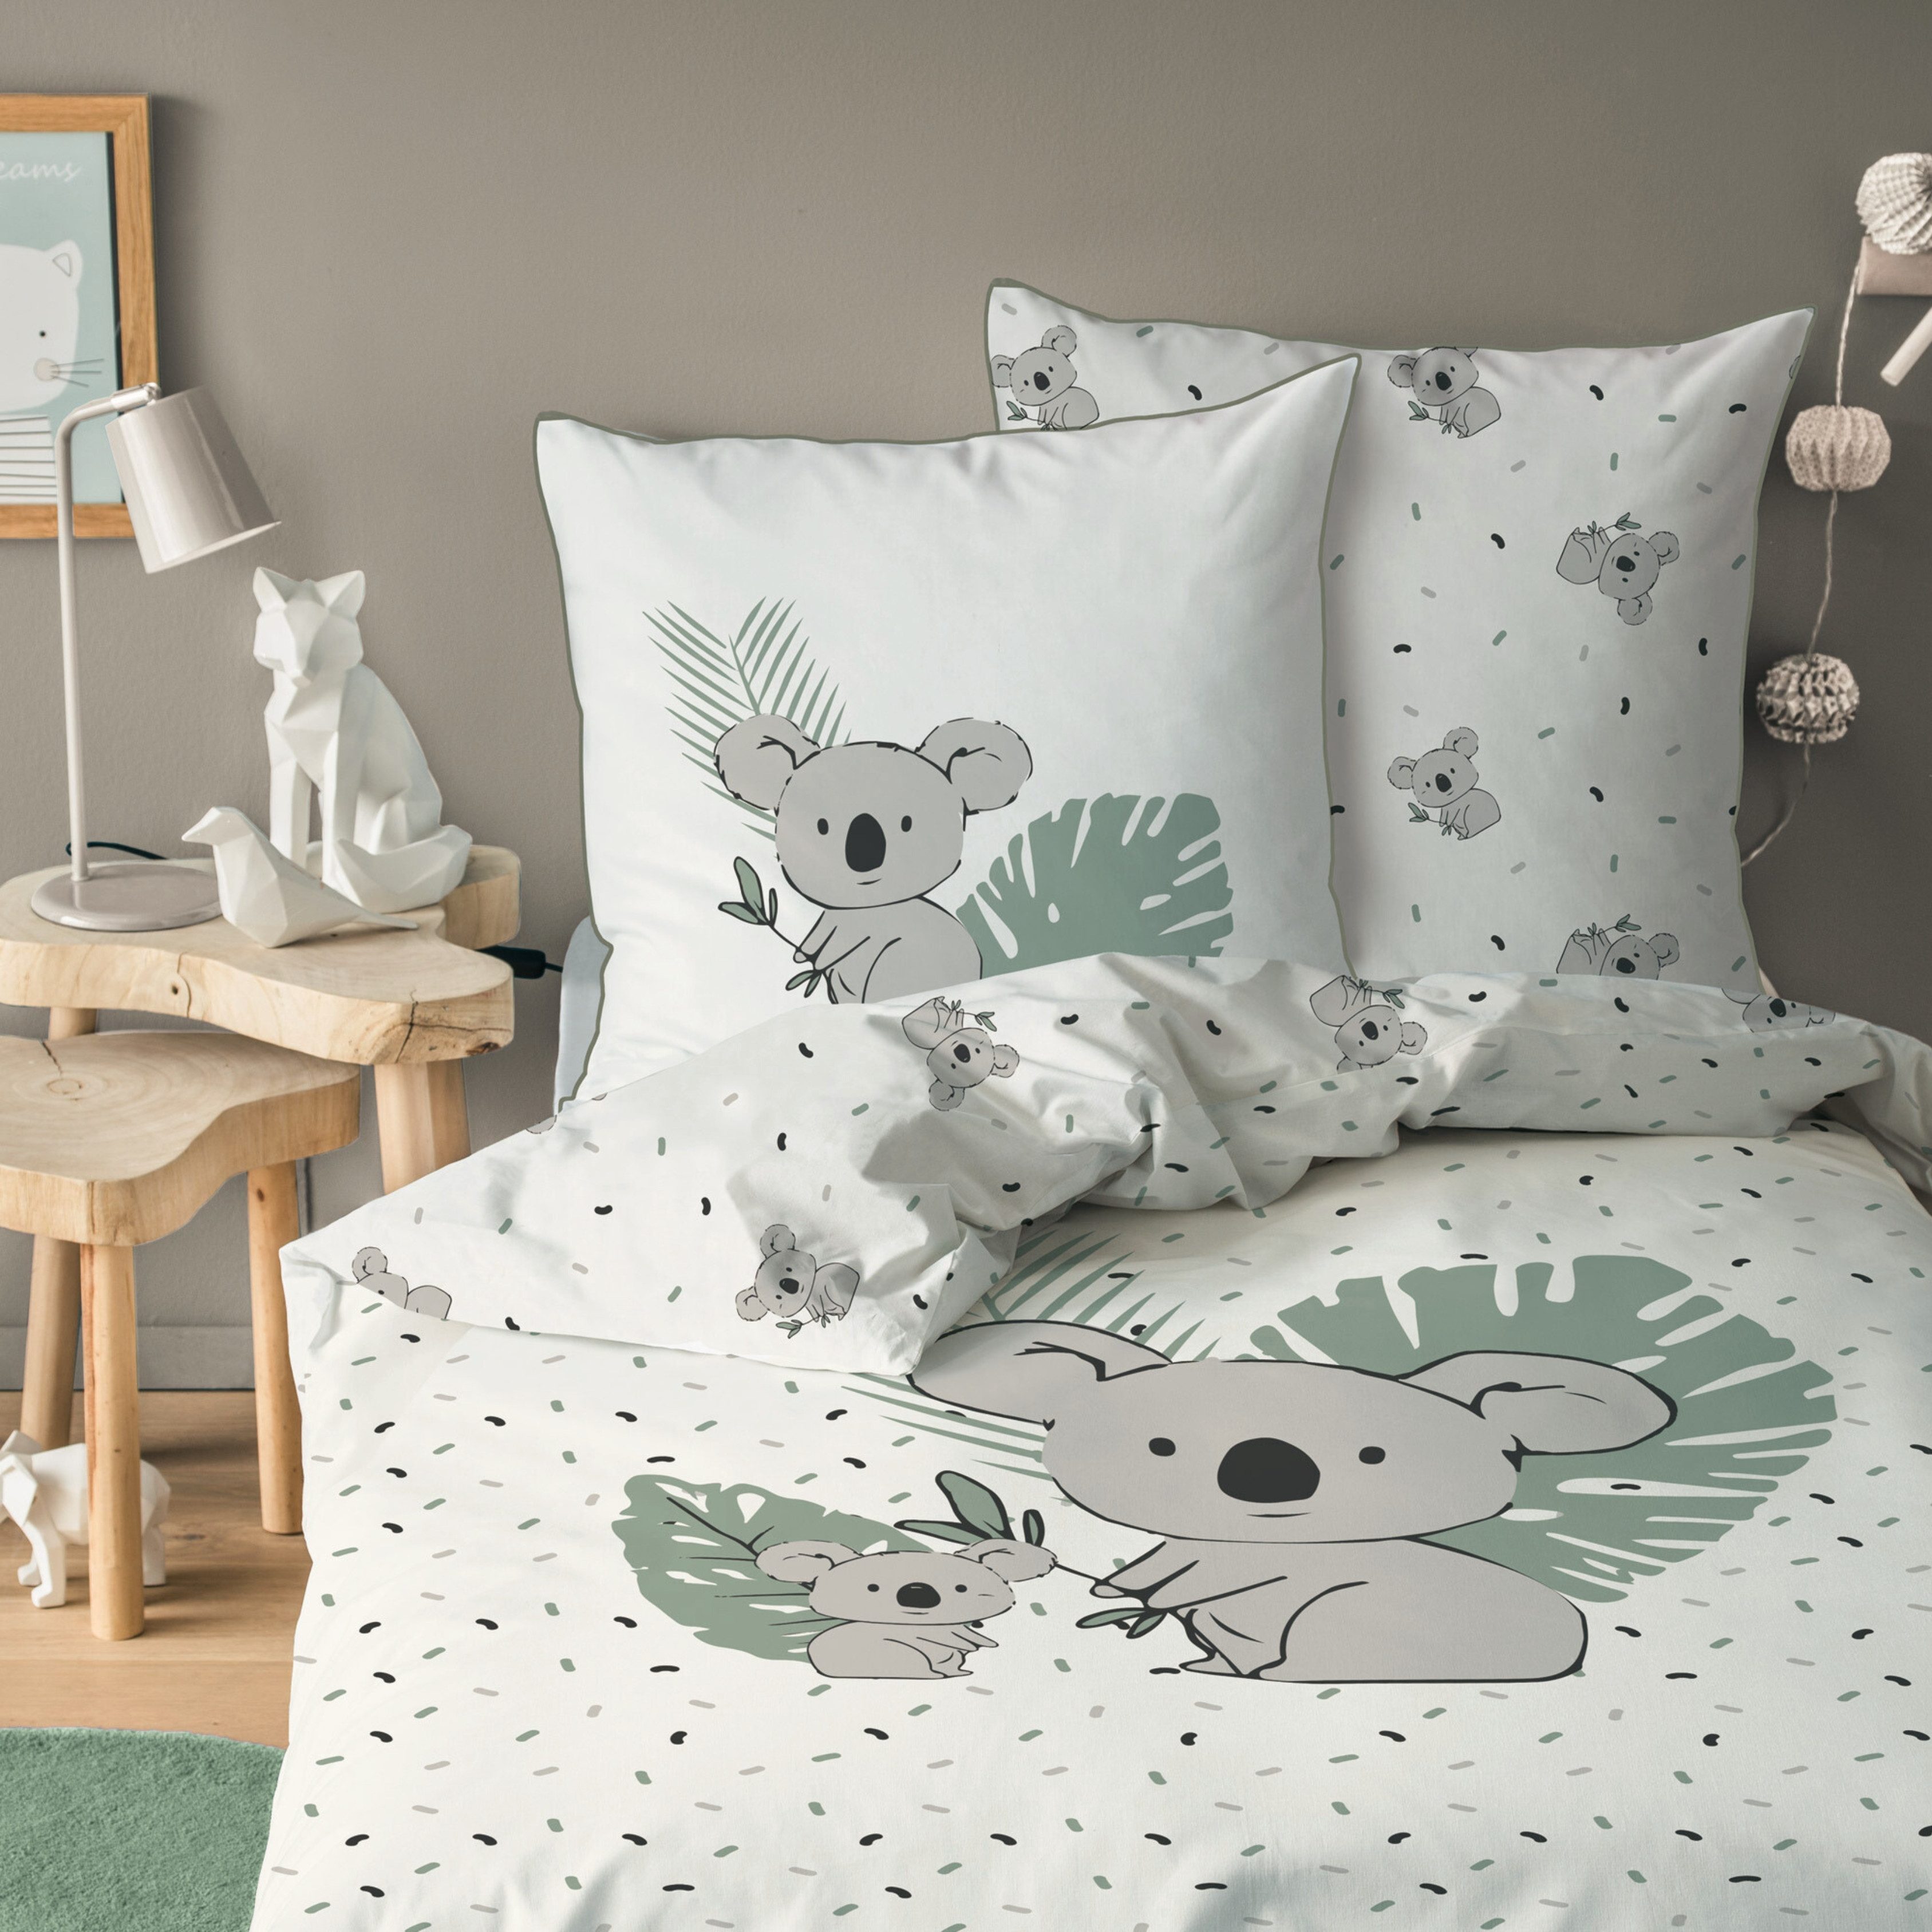 Kinderbettwäsche Koala 135x200 + 80x80 cm, 100 % Baumwolle, MTOnlinehandel, Renforcé, 2 teilig, hochwertige Bettwäsche für Mädchen und Jungen